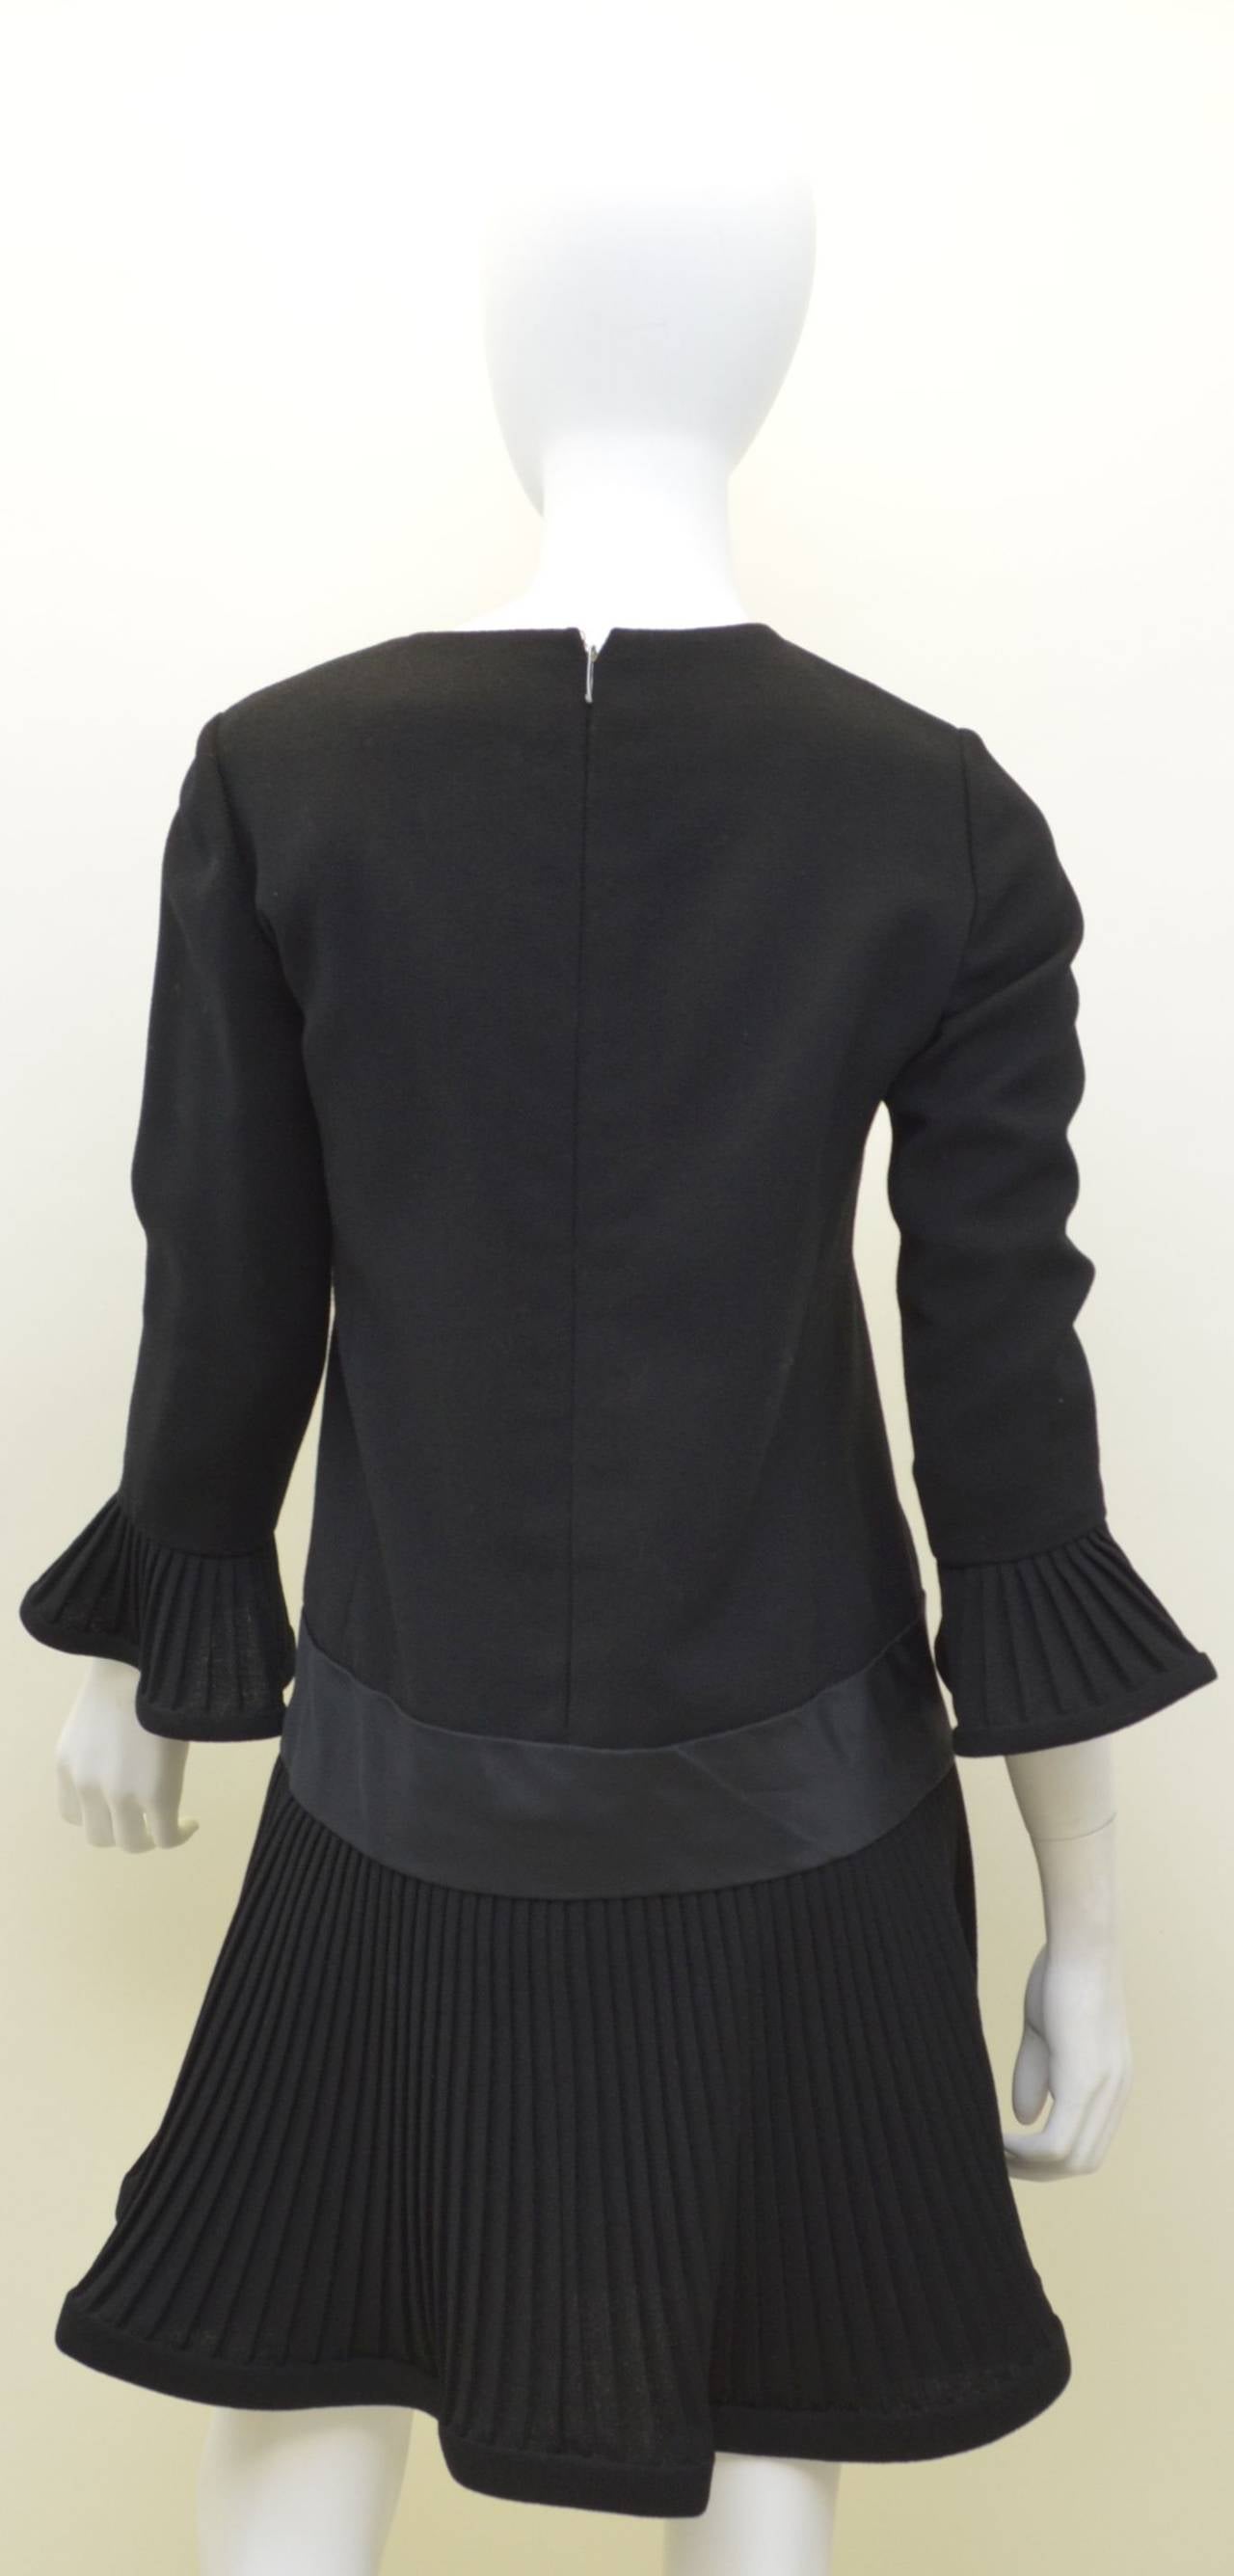 La mini robe Pierre Cardin présente une fermeture éclair au dos, des poignets et un ourlet plissés, une bande de satin autour des hanches et est entièrement doublée. 

Mesures :
Poitrine - 35
Taille - 33''
Hanches - 40
Manches - 20,5